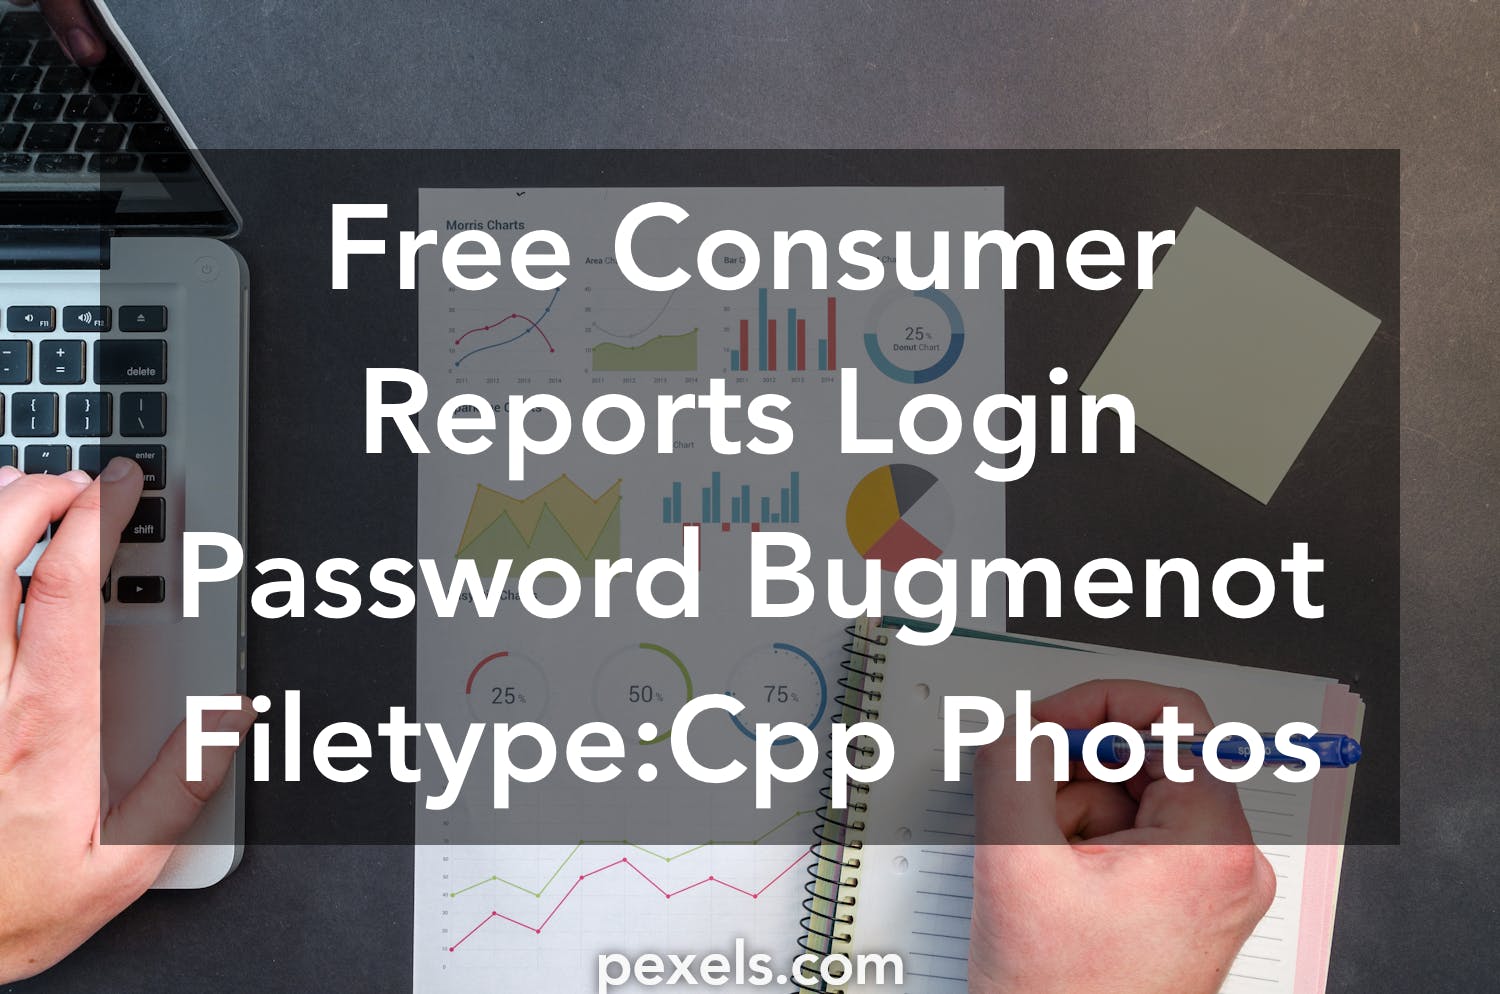 Instagram Bugmenot Bugmenot Videos You2repeat - roblox usernames and passwords bugmenot